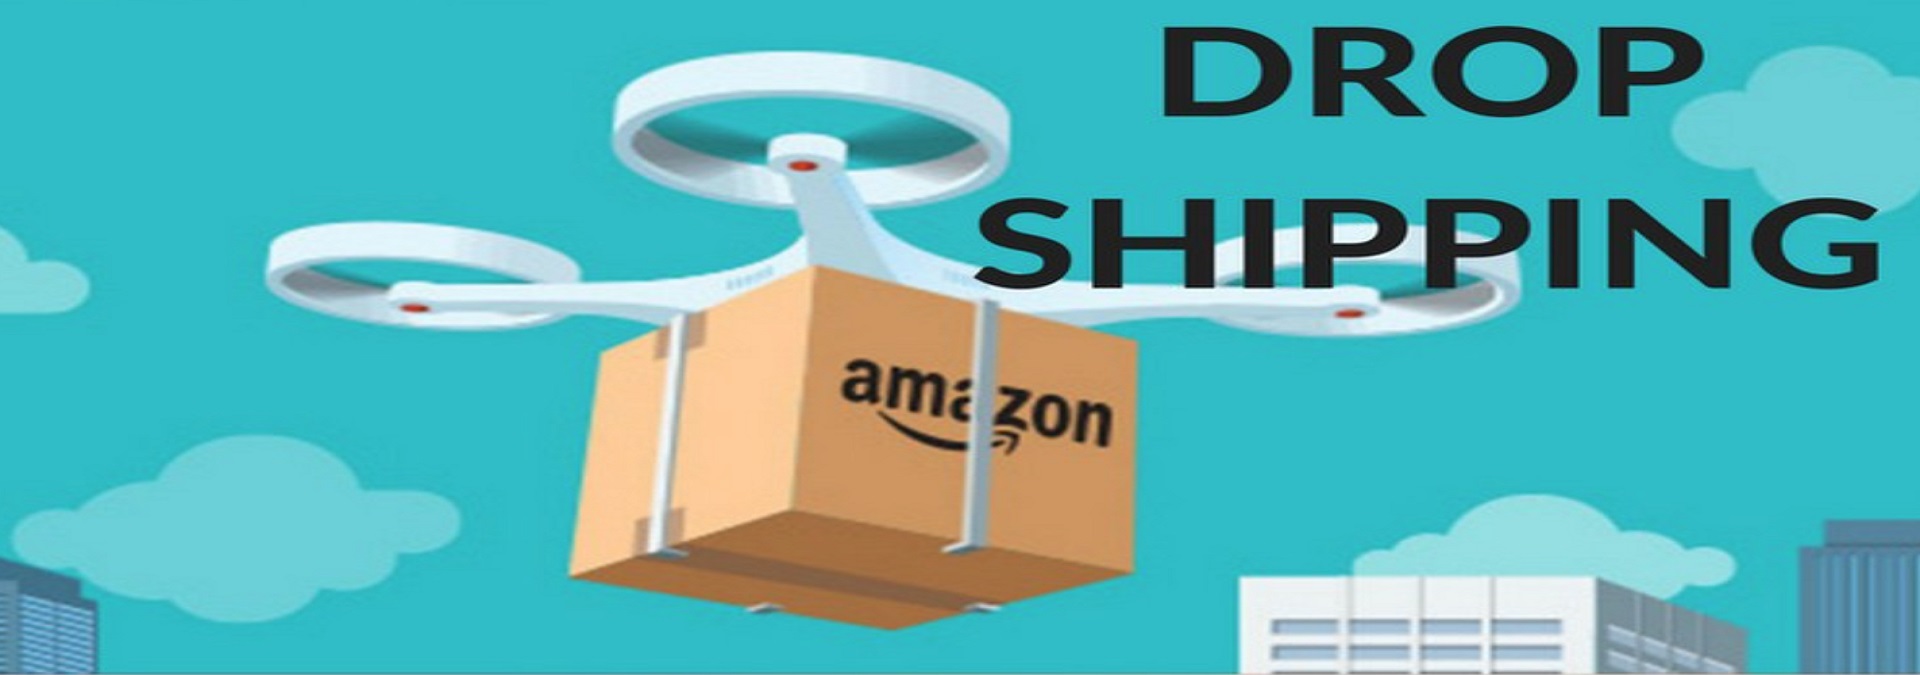 Amazon Dropshipping için bazı önemli noktalar var!